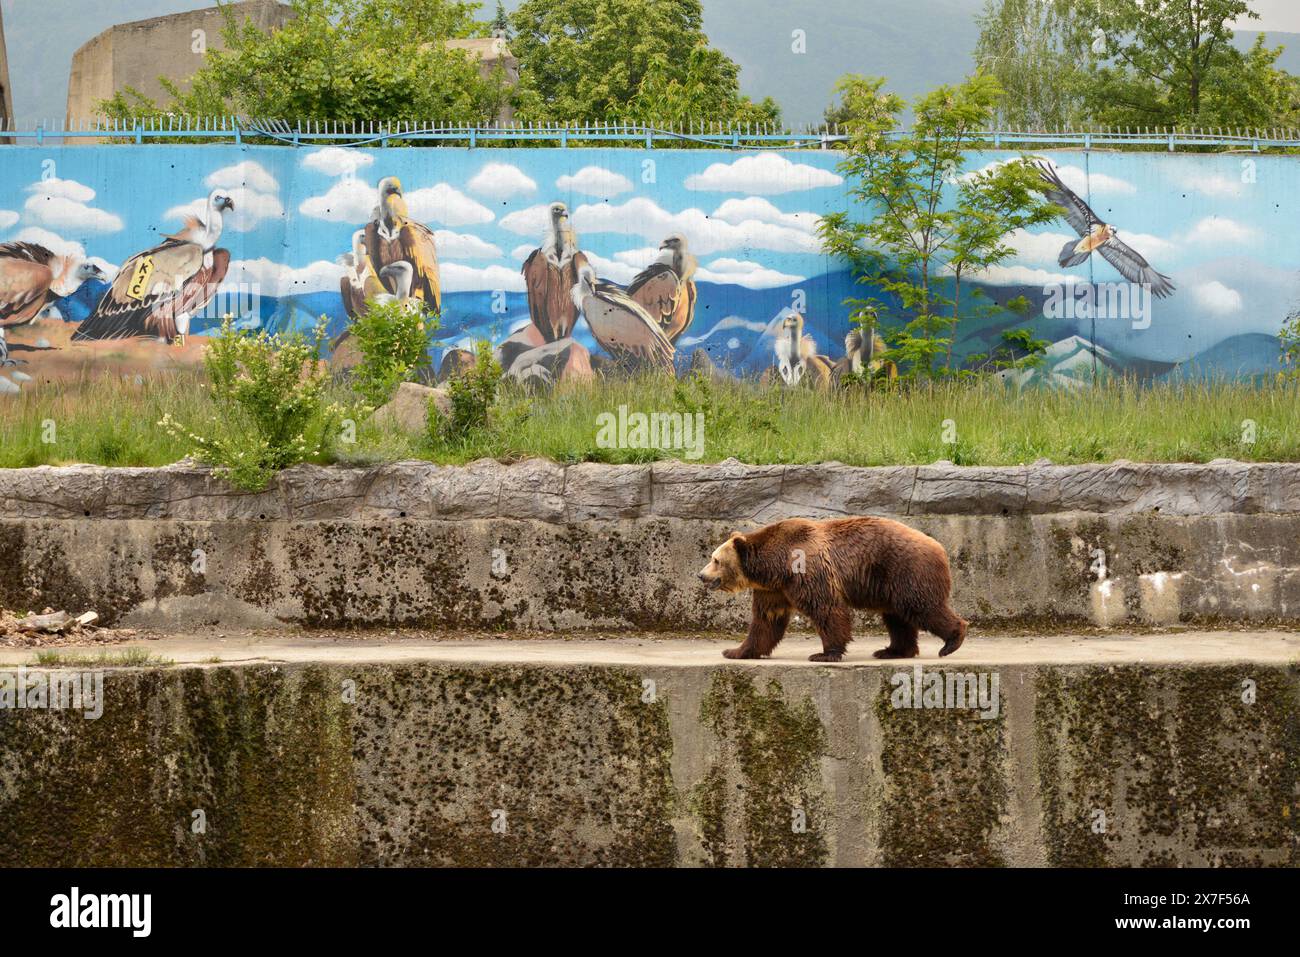 Eurasischer Braunbär Ursus arctos arctos in seinem Gehege mit Graffiti im Zoo von Sofia, Sofia Bulgarien, Osteuropa, Balkan, EU Stockfoto